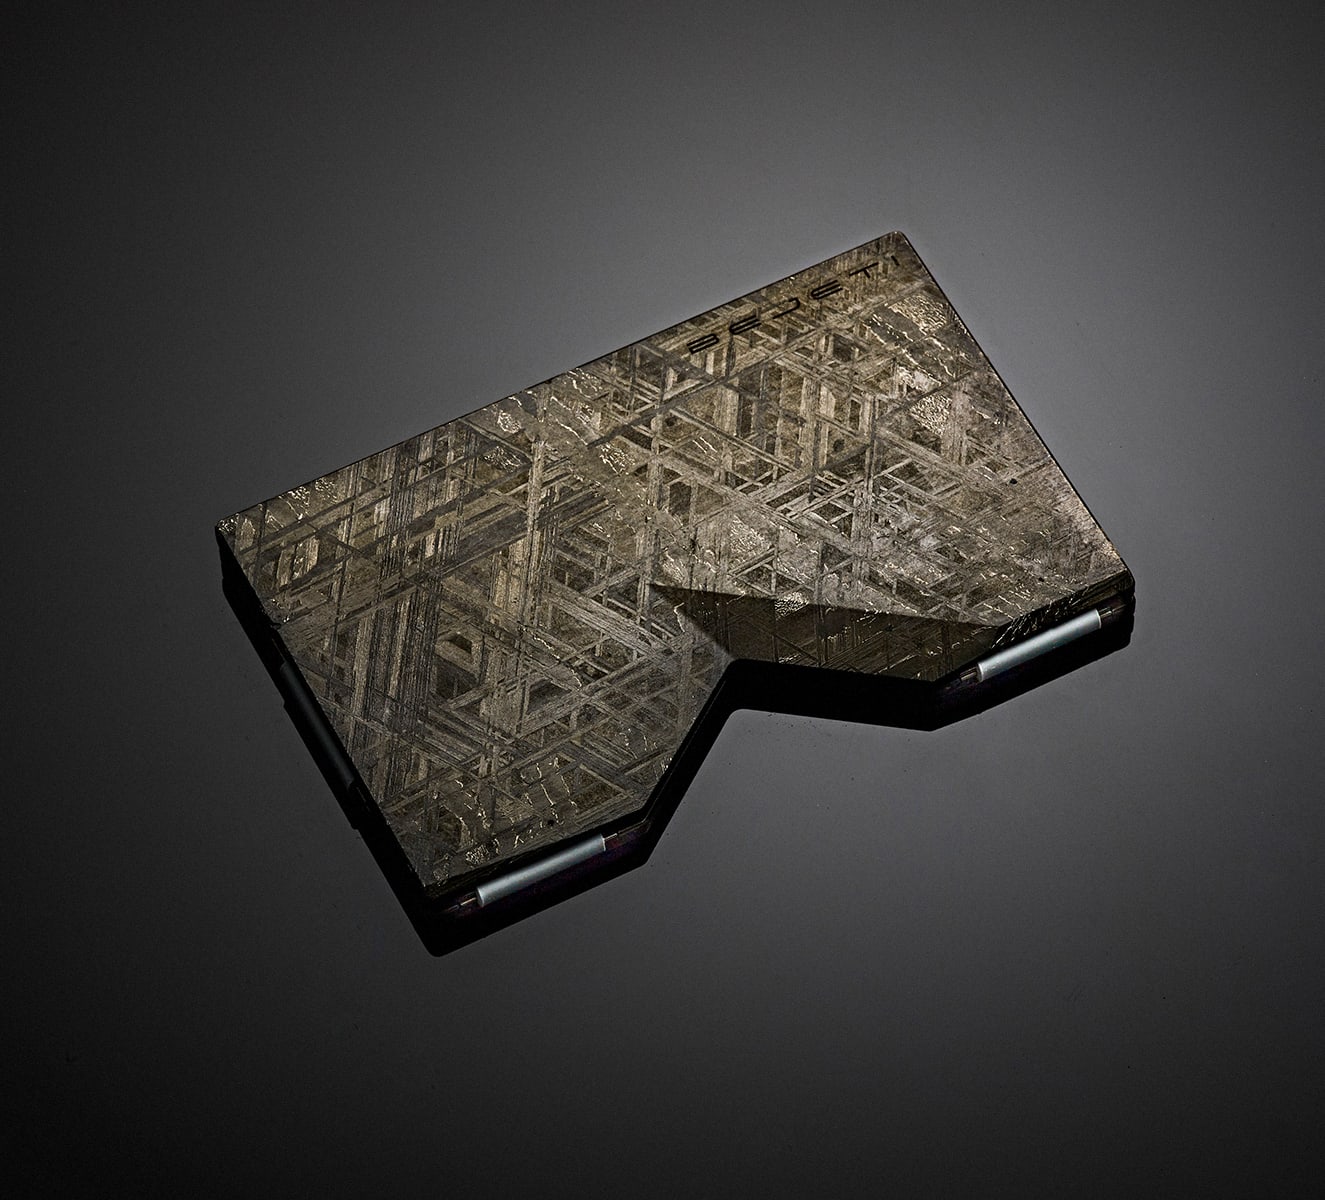 Esta empresa fabricó la primera cartera hecha de un meteorito. ¿Cuánto crees que costó?